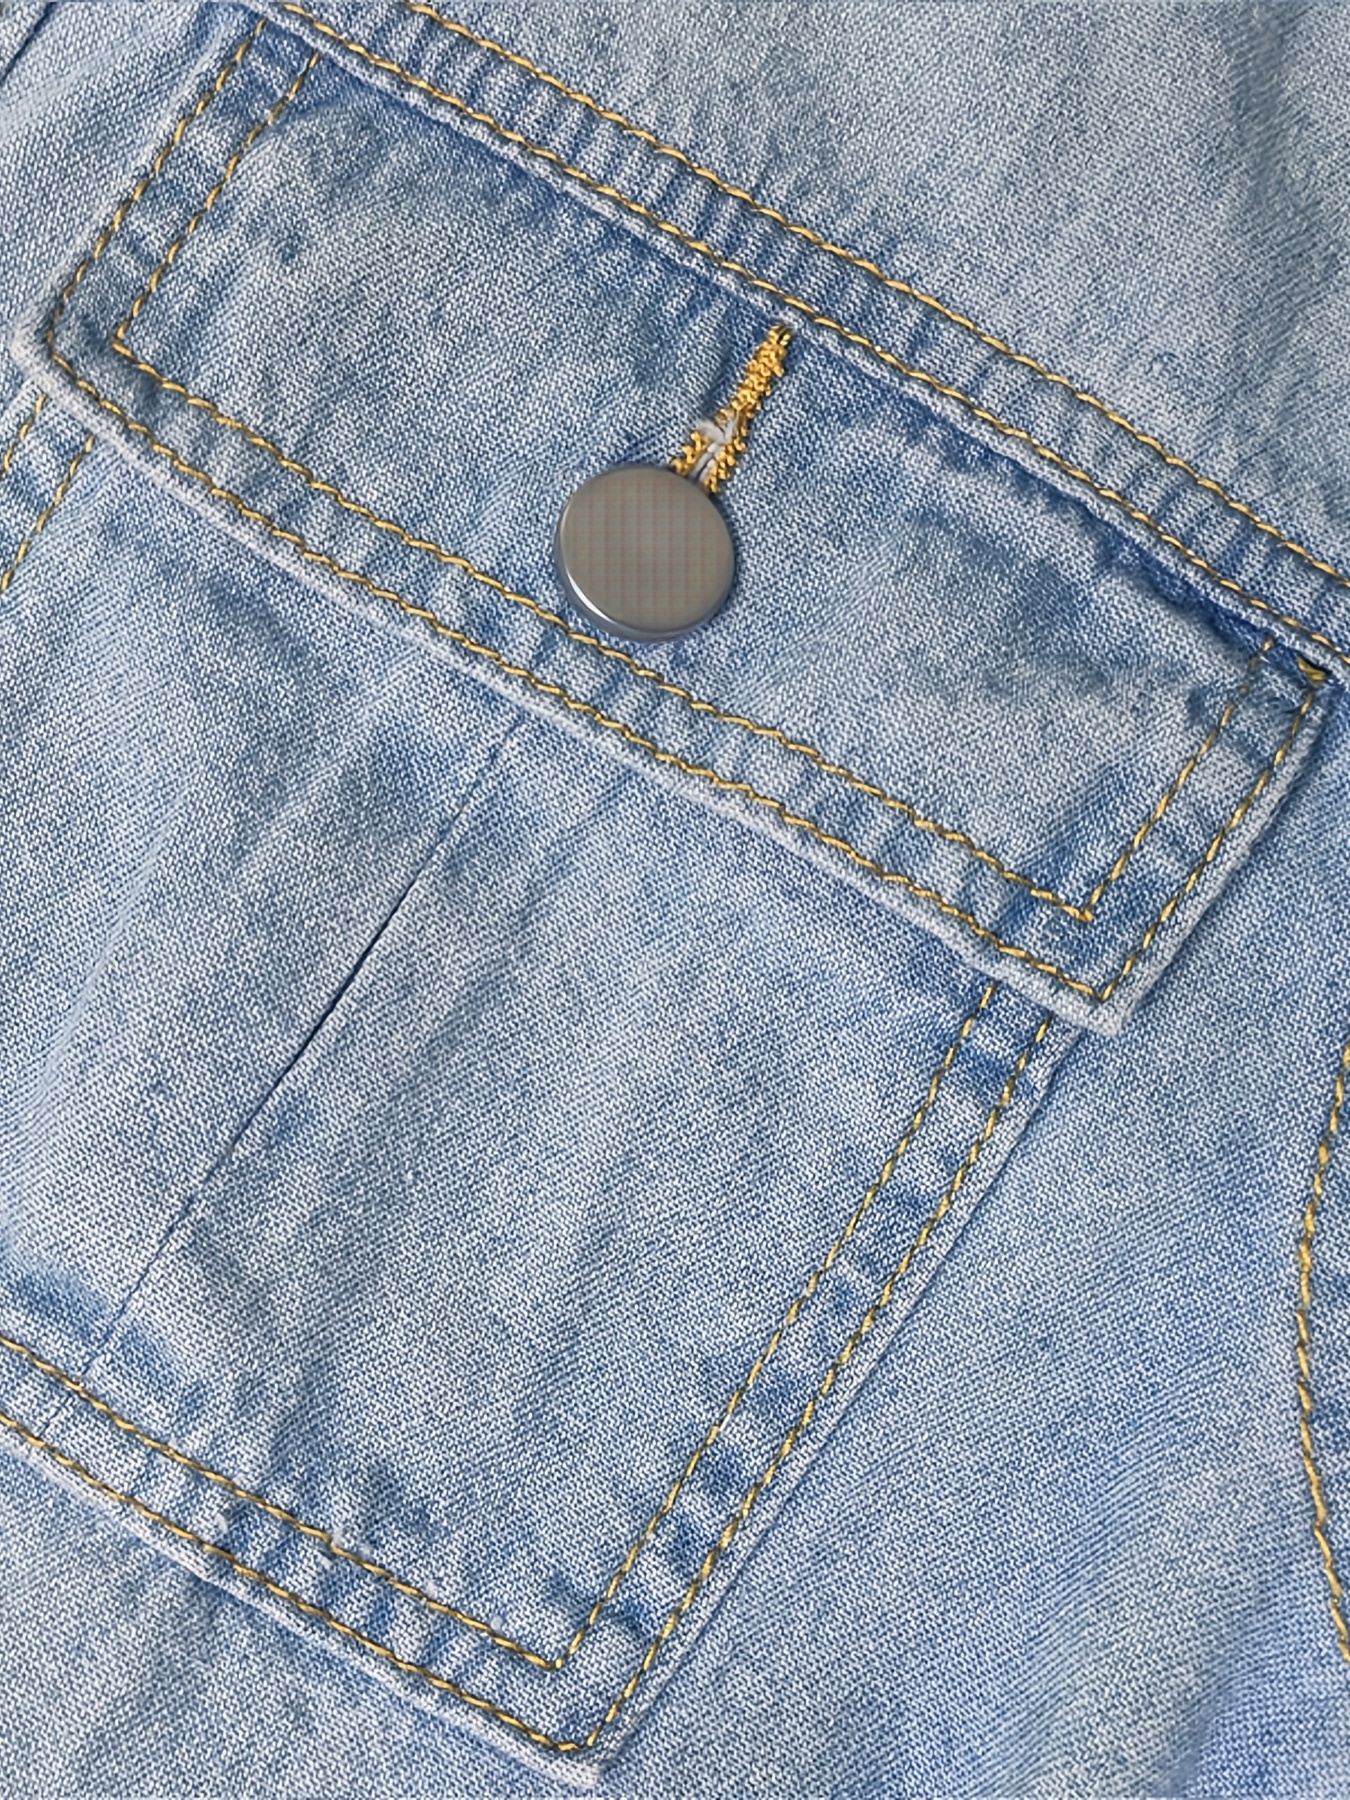 Women Casual Denim Jean Dresses Short Ruffle Button A-Line Long Sleeve  Shirt